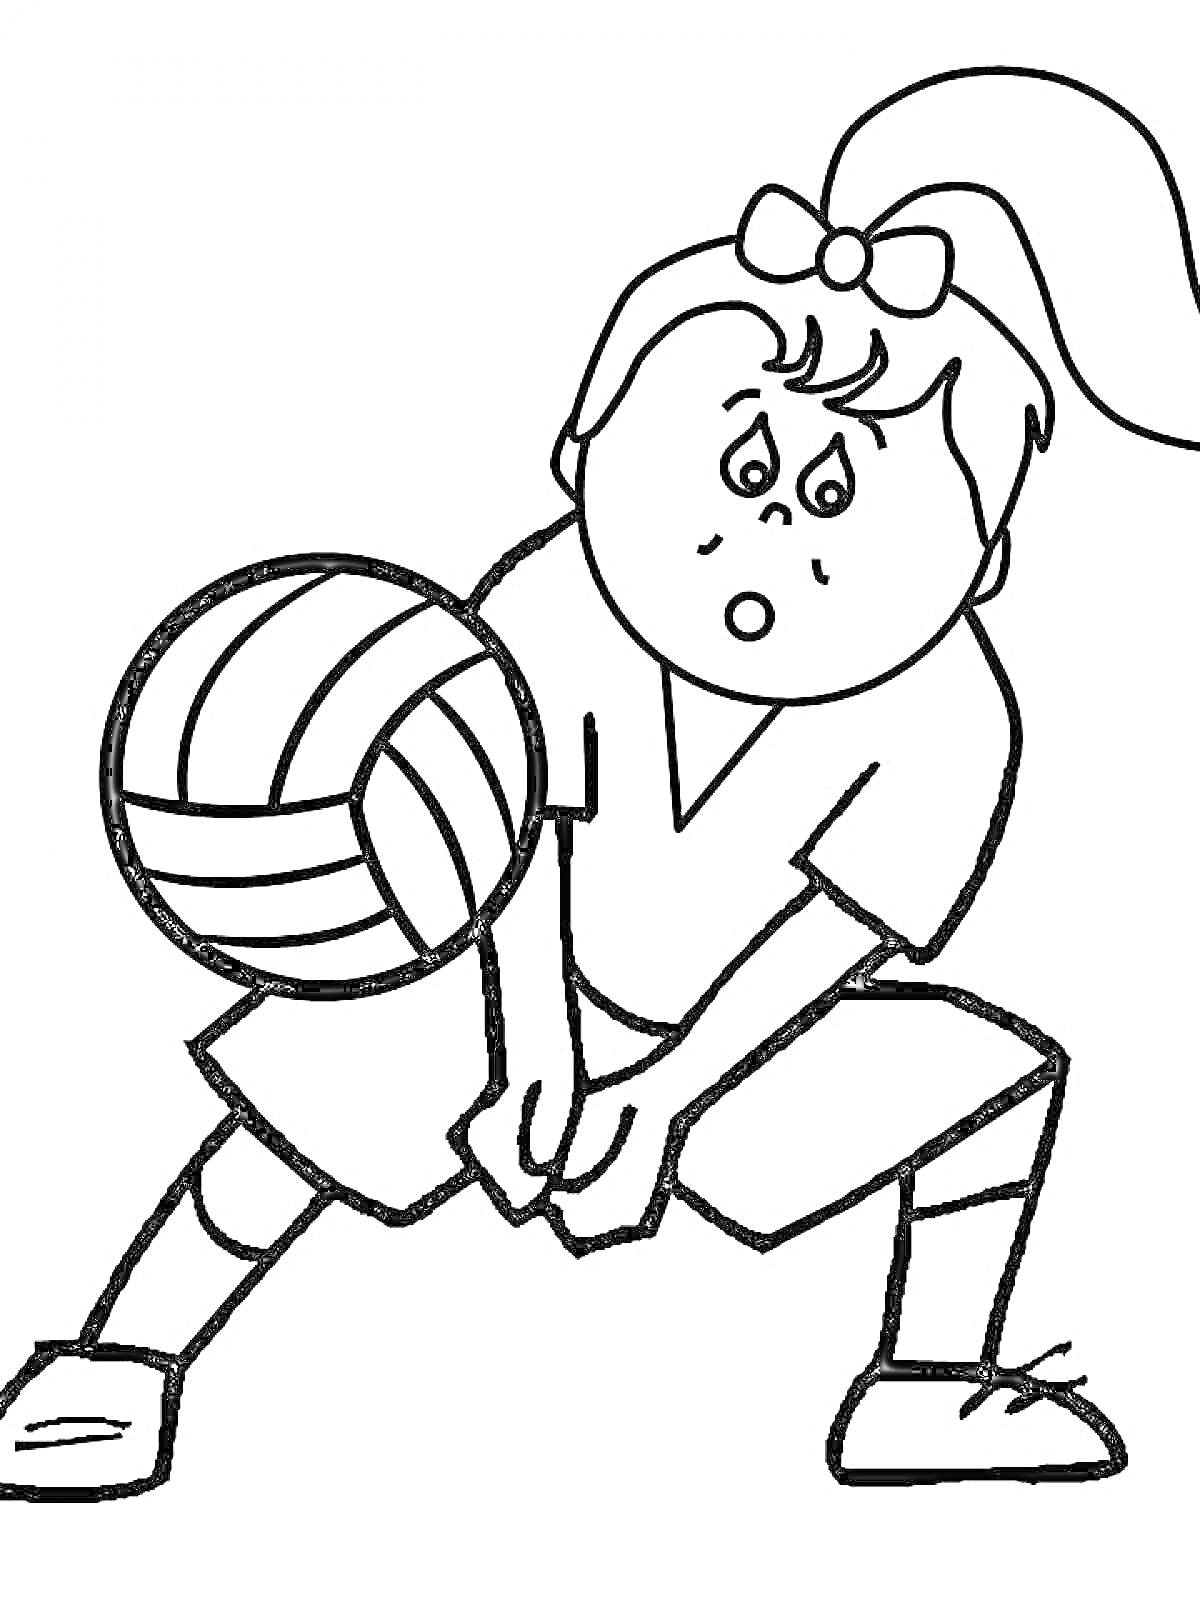 Раскраска Девочка играет в волейбол, мяч в полёте, девочка в спортивной форме с хвостиком на голове